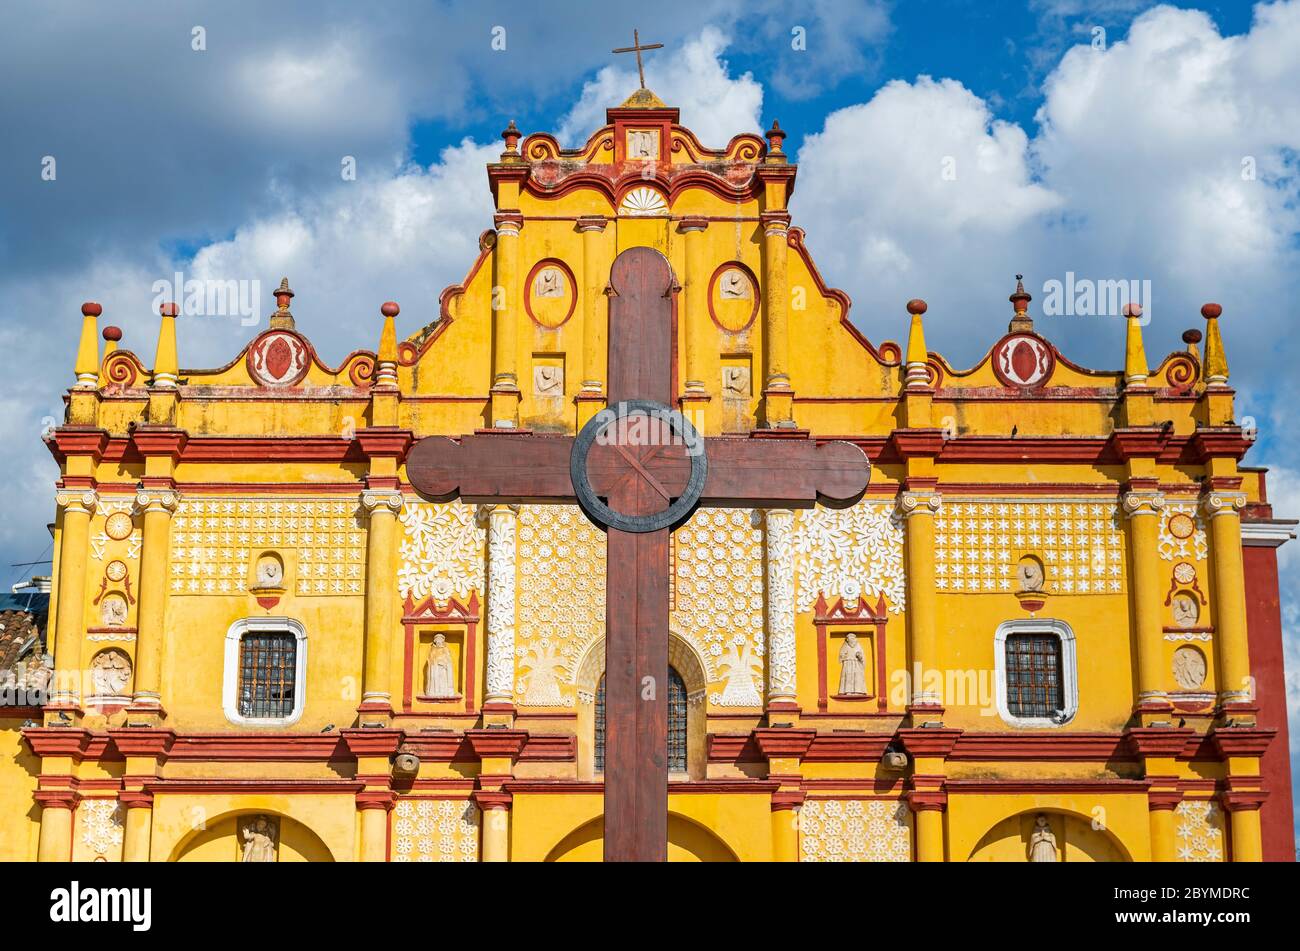 Façade de la cathédrale de San Cristobal de las Casas avec une croix en bois devant, Chiapas, Mexique. Concentrez-vous sur le bâtiment innet et transversal. Banque D'Images